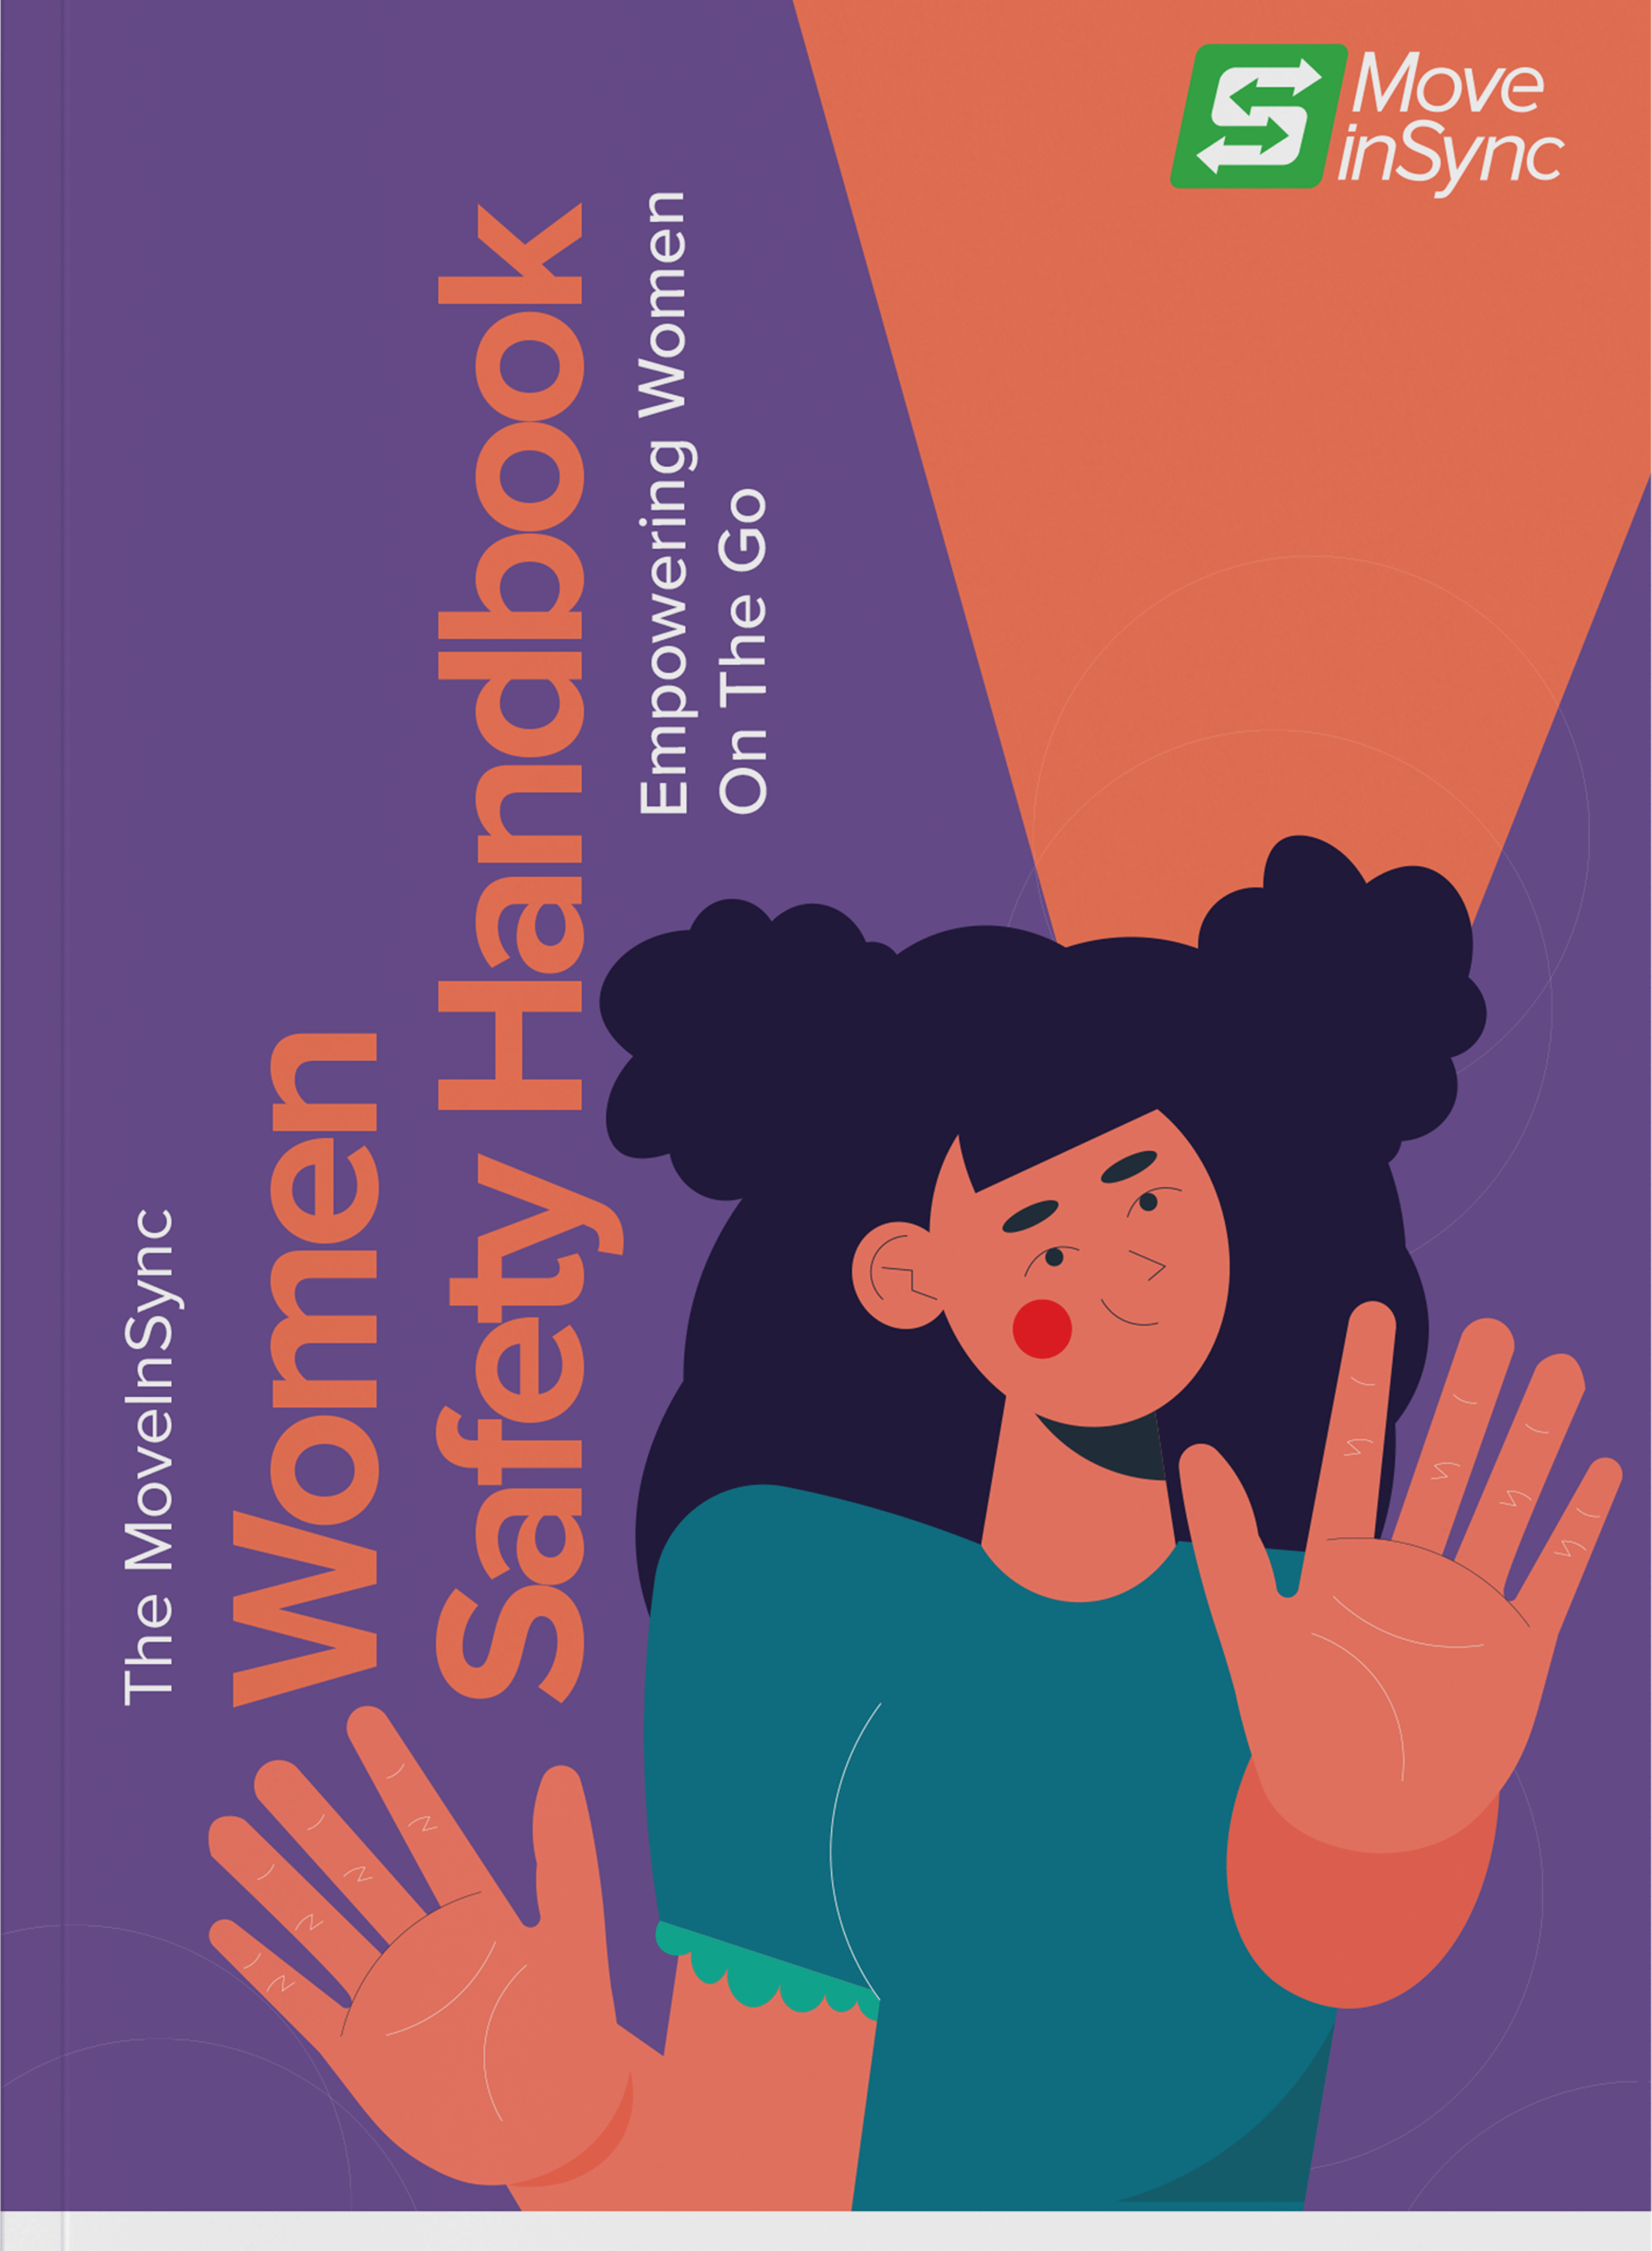 Women Safety Handbook